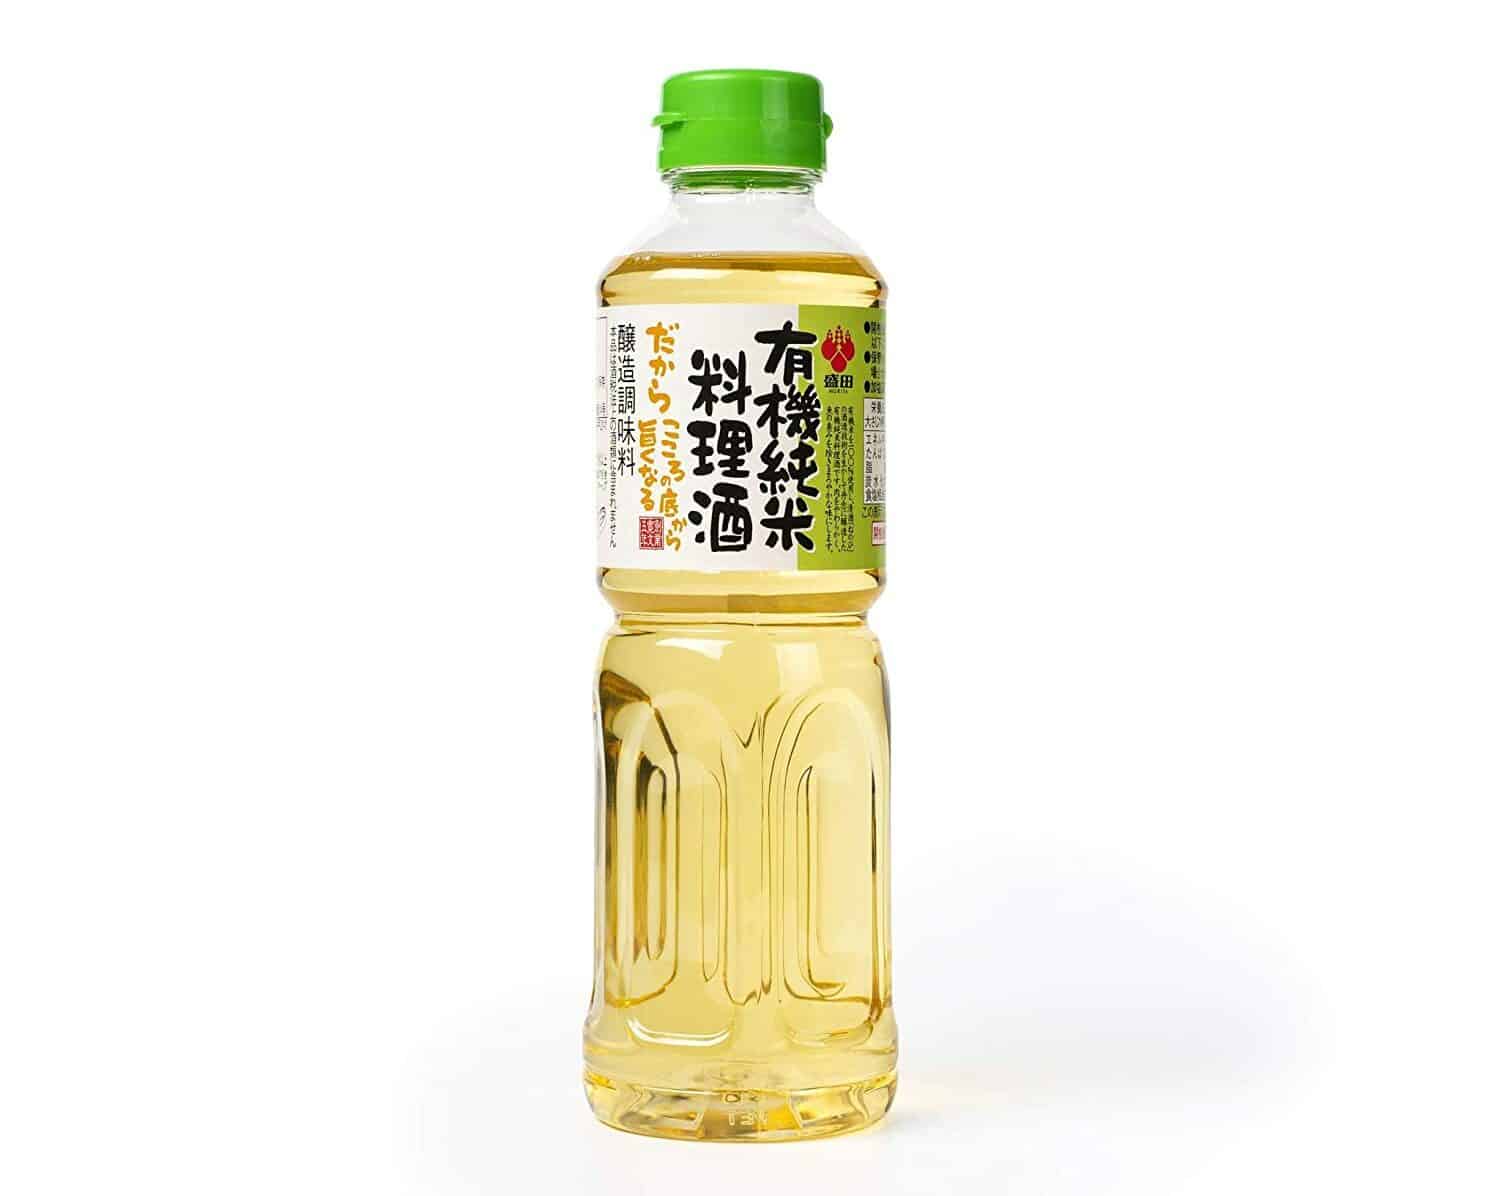 أفضل من أجل الطبخ العضوي: Morita Premium Organic Cooking Sake